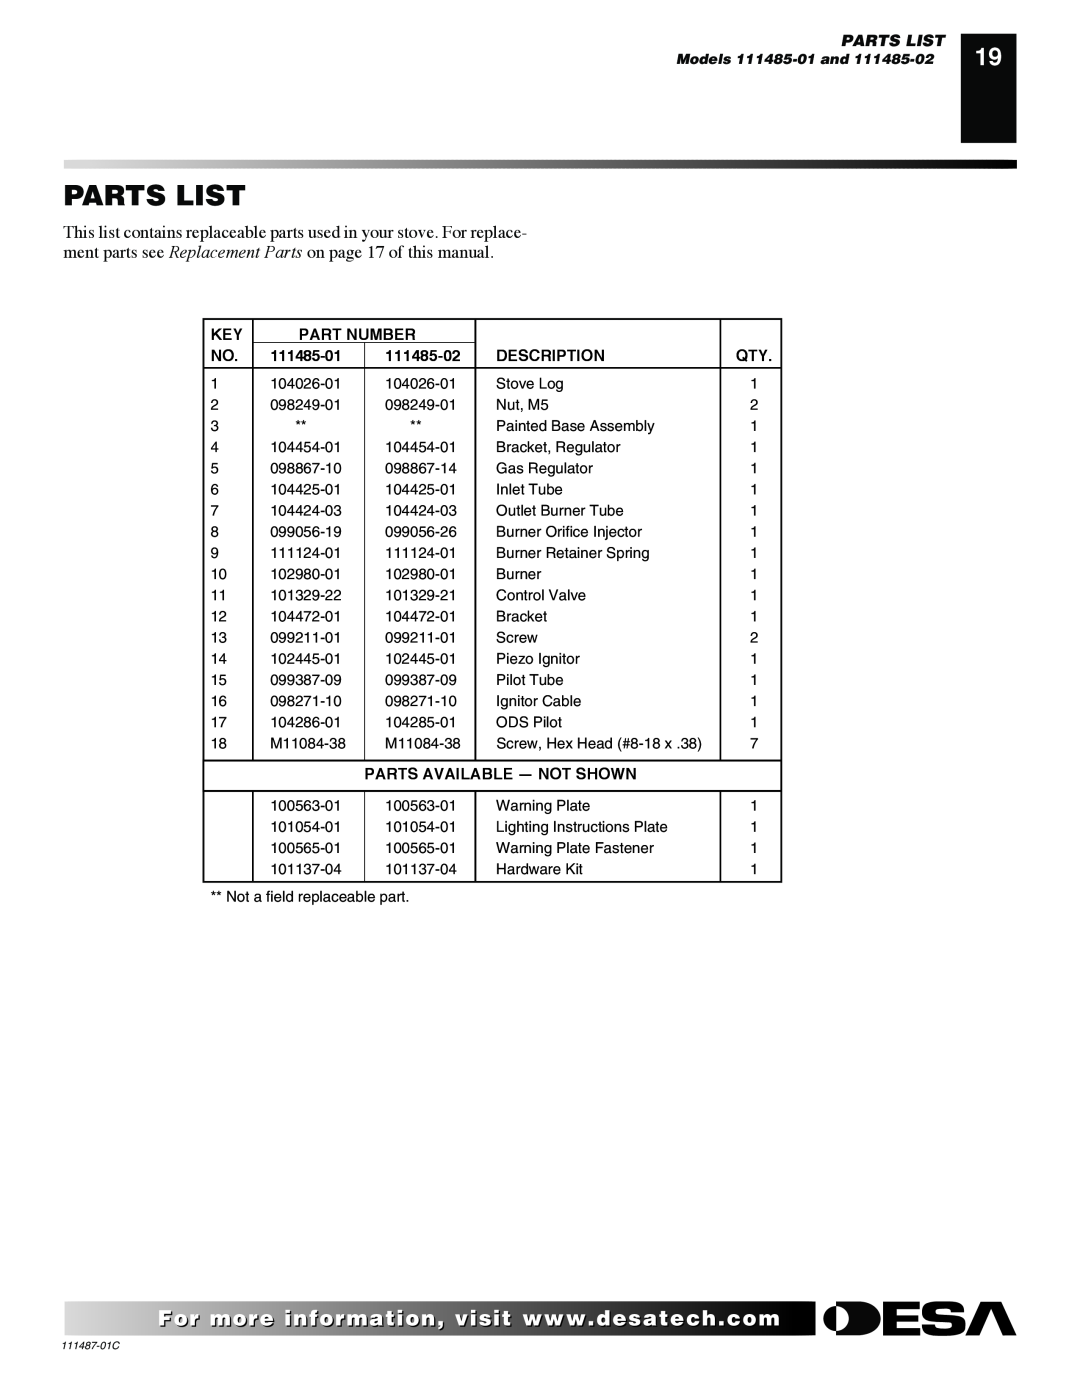 Desa CSBPT CSPBNT, CSPIPT, CSBNT Parts List, Part Number, 111485-01, 111485-02, Description, Parts Available - Not Shown 